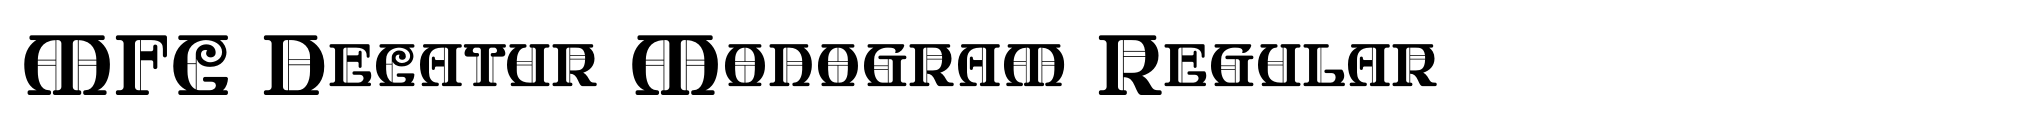 MFC Decatur Monogram Regular image